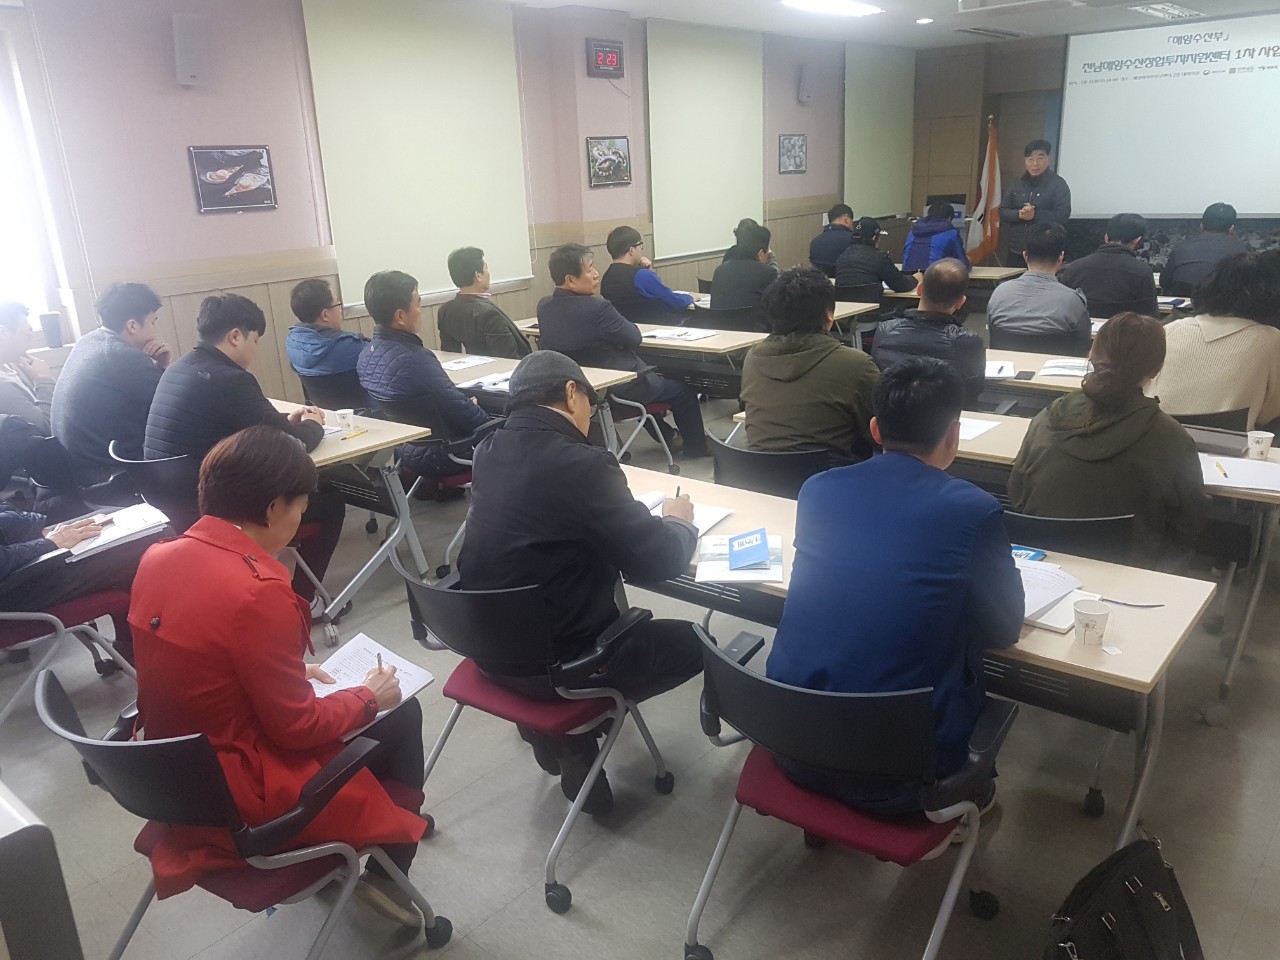 [해양센터] 전남해양수산창업투자지원센터 사업설명회 개최